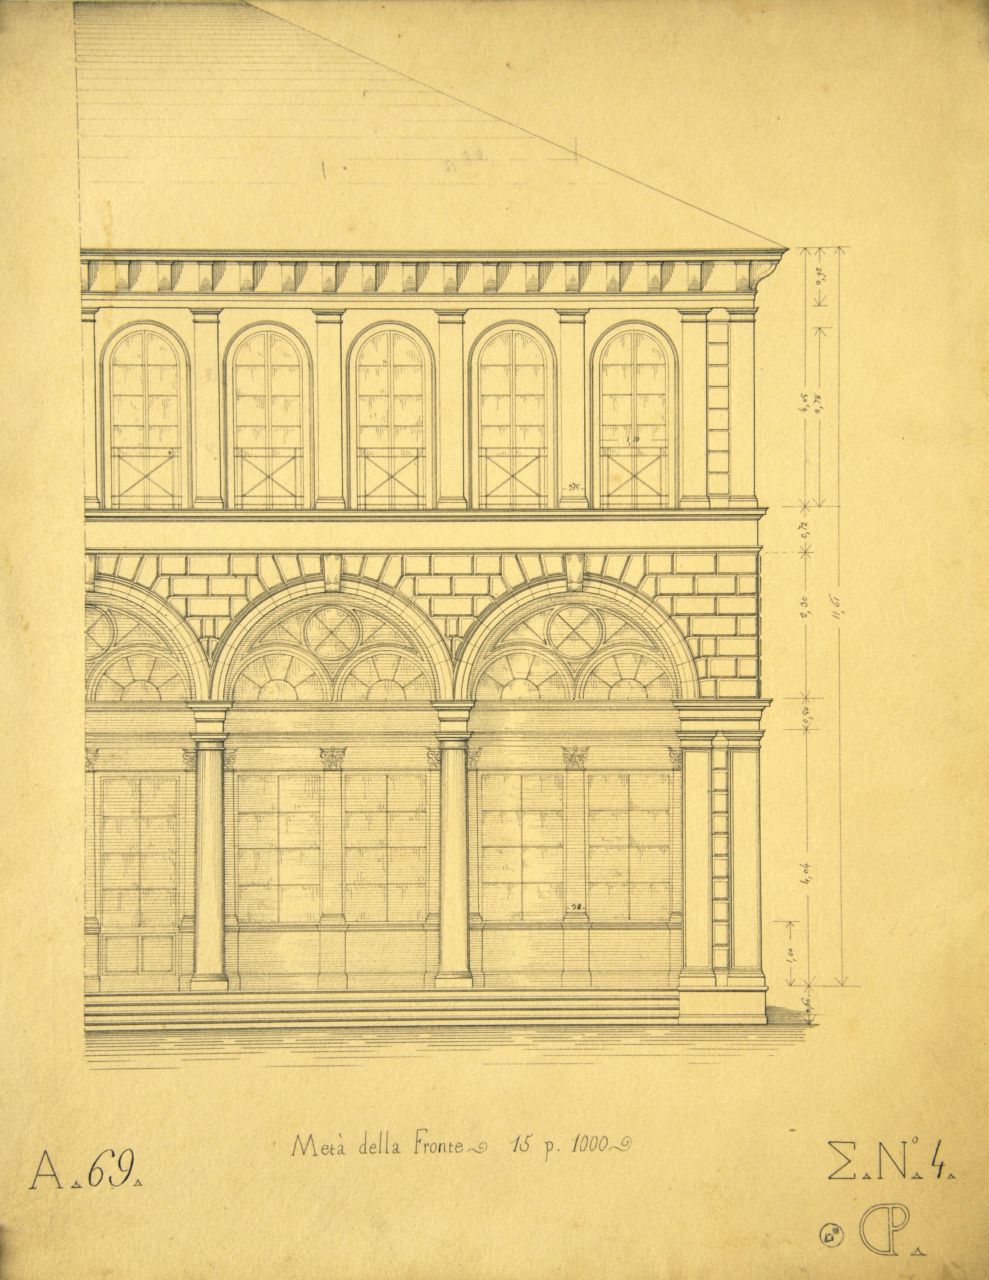 Metà della Fronte, Prospetto principale parzialmente quotato di parte di "villetta" (disegno architettonico) di Promis Carlo (secondo quarto sec. XIX)